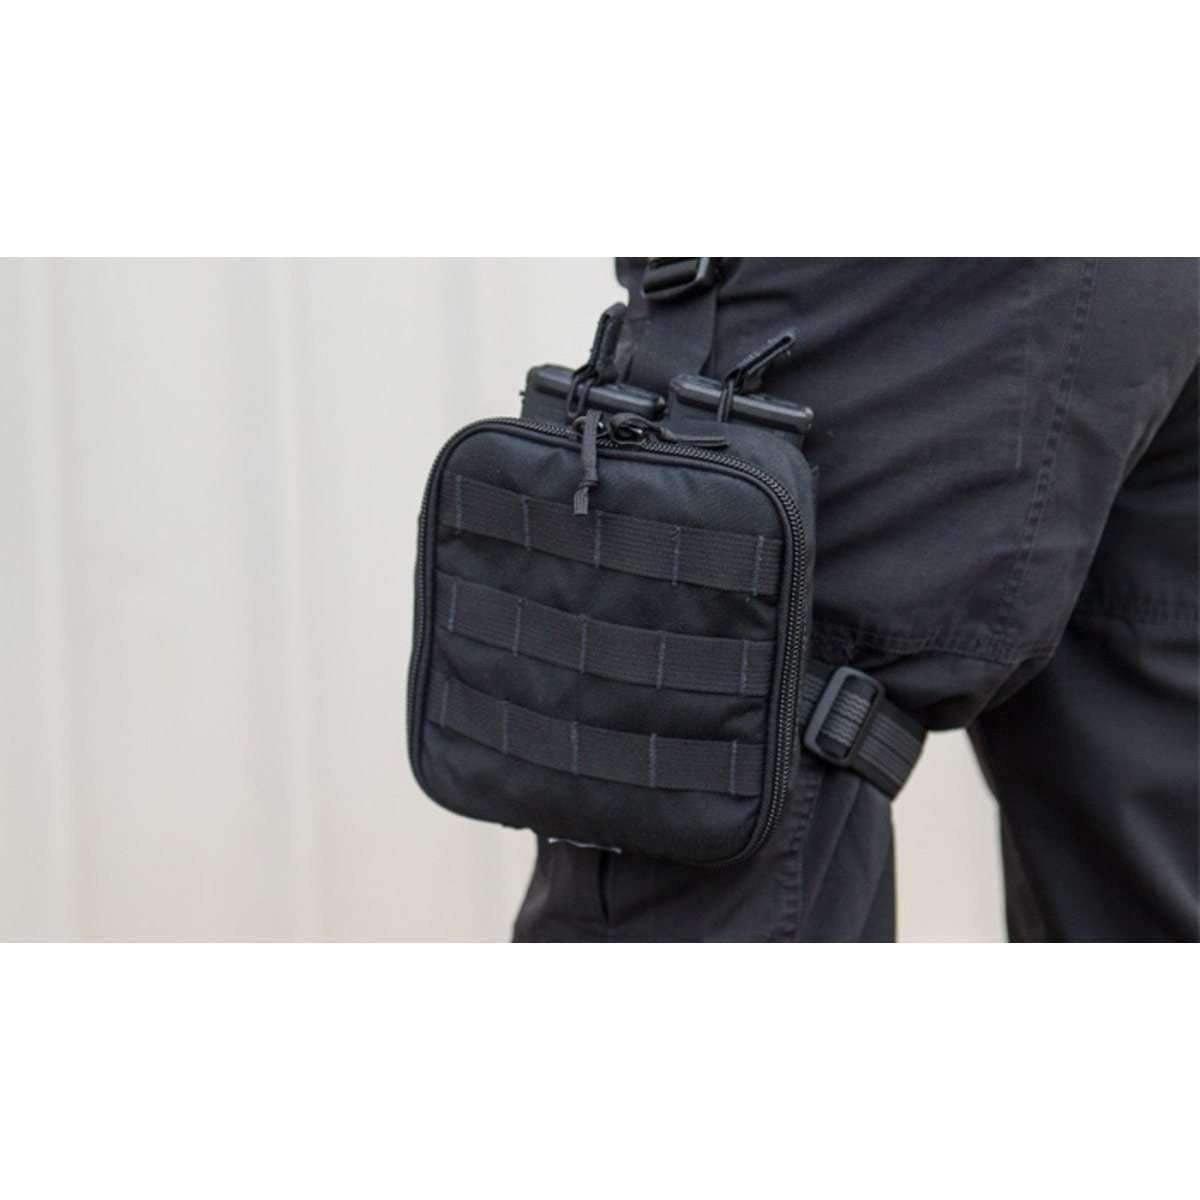 TacMed™ Patrol Rifle Response Kit - Vendor